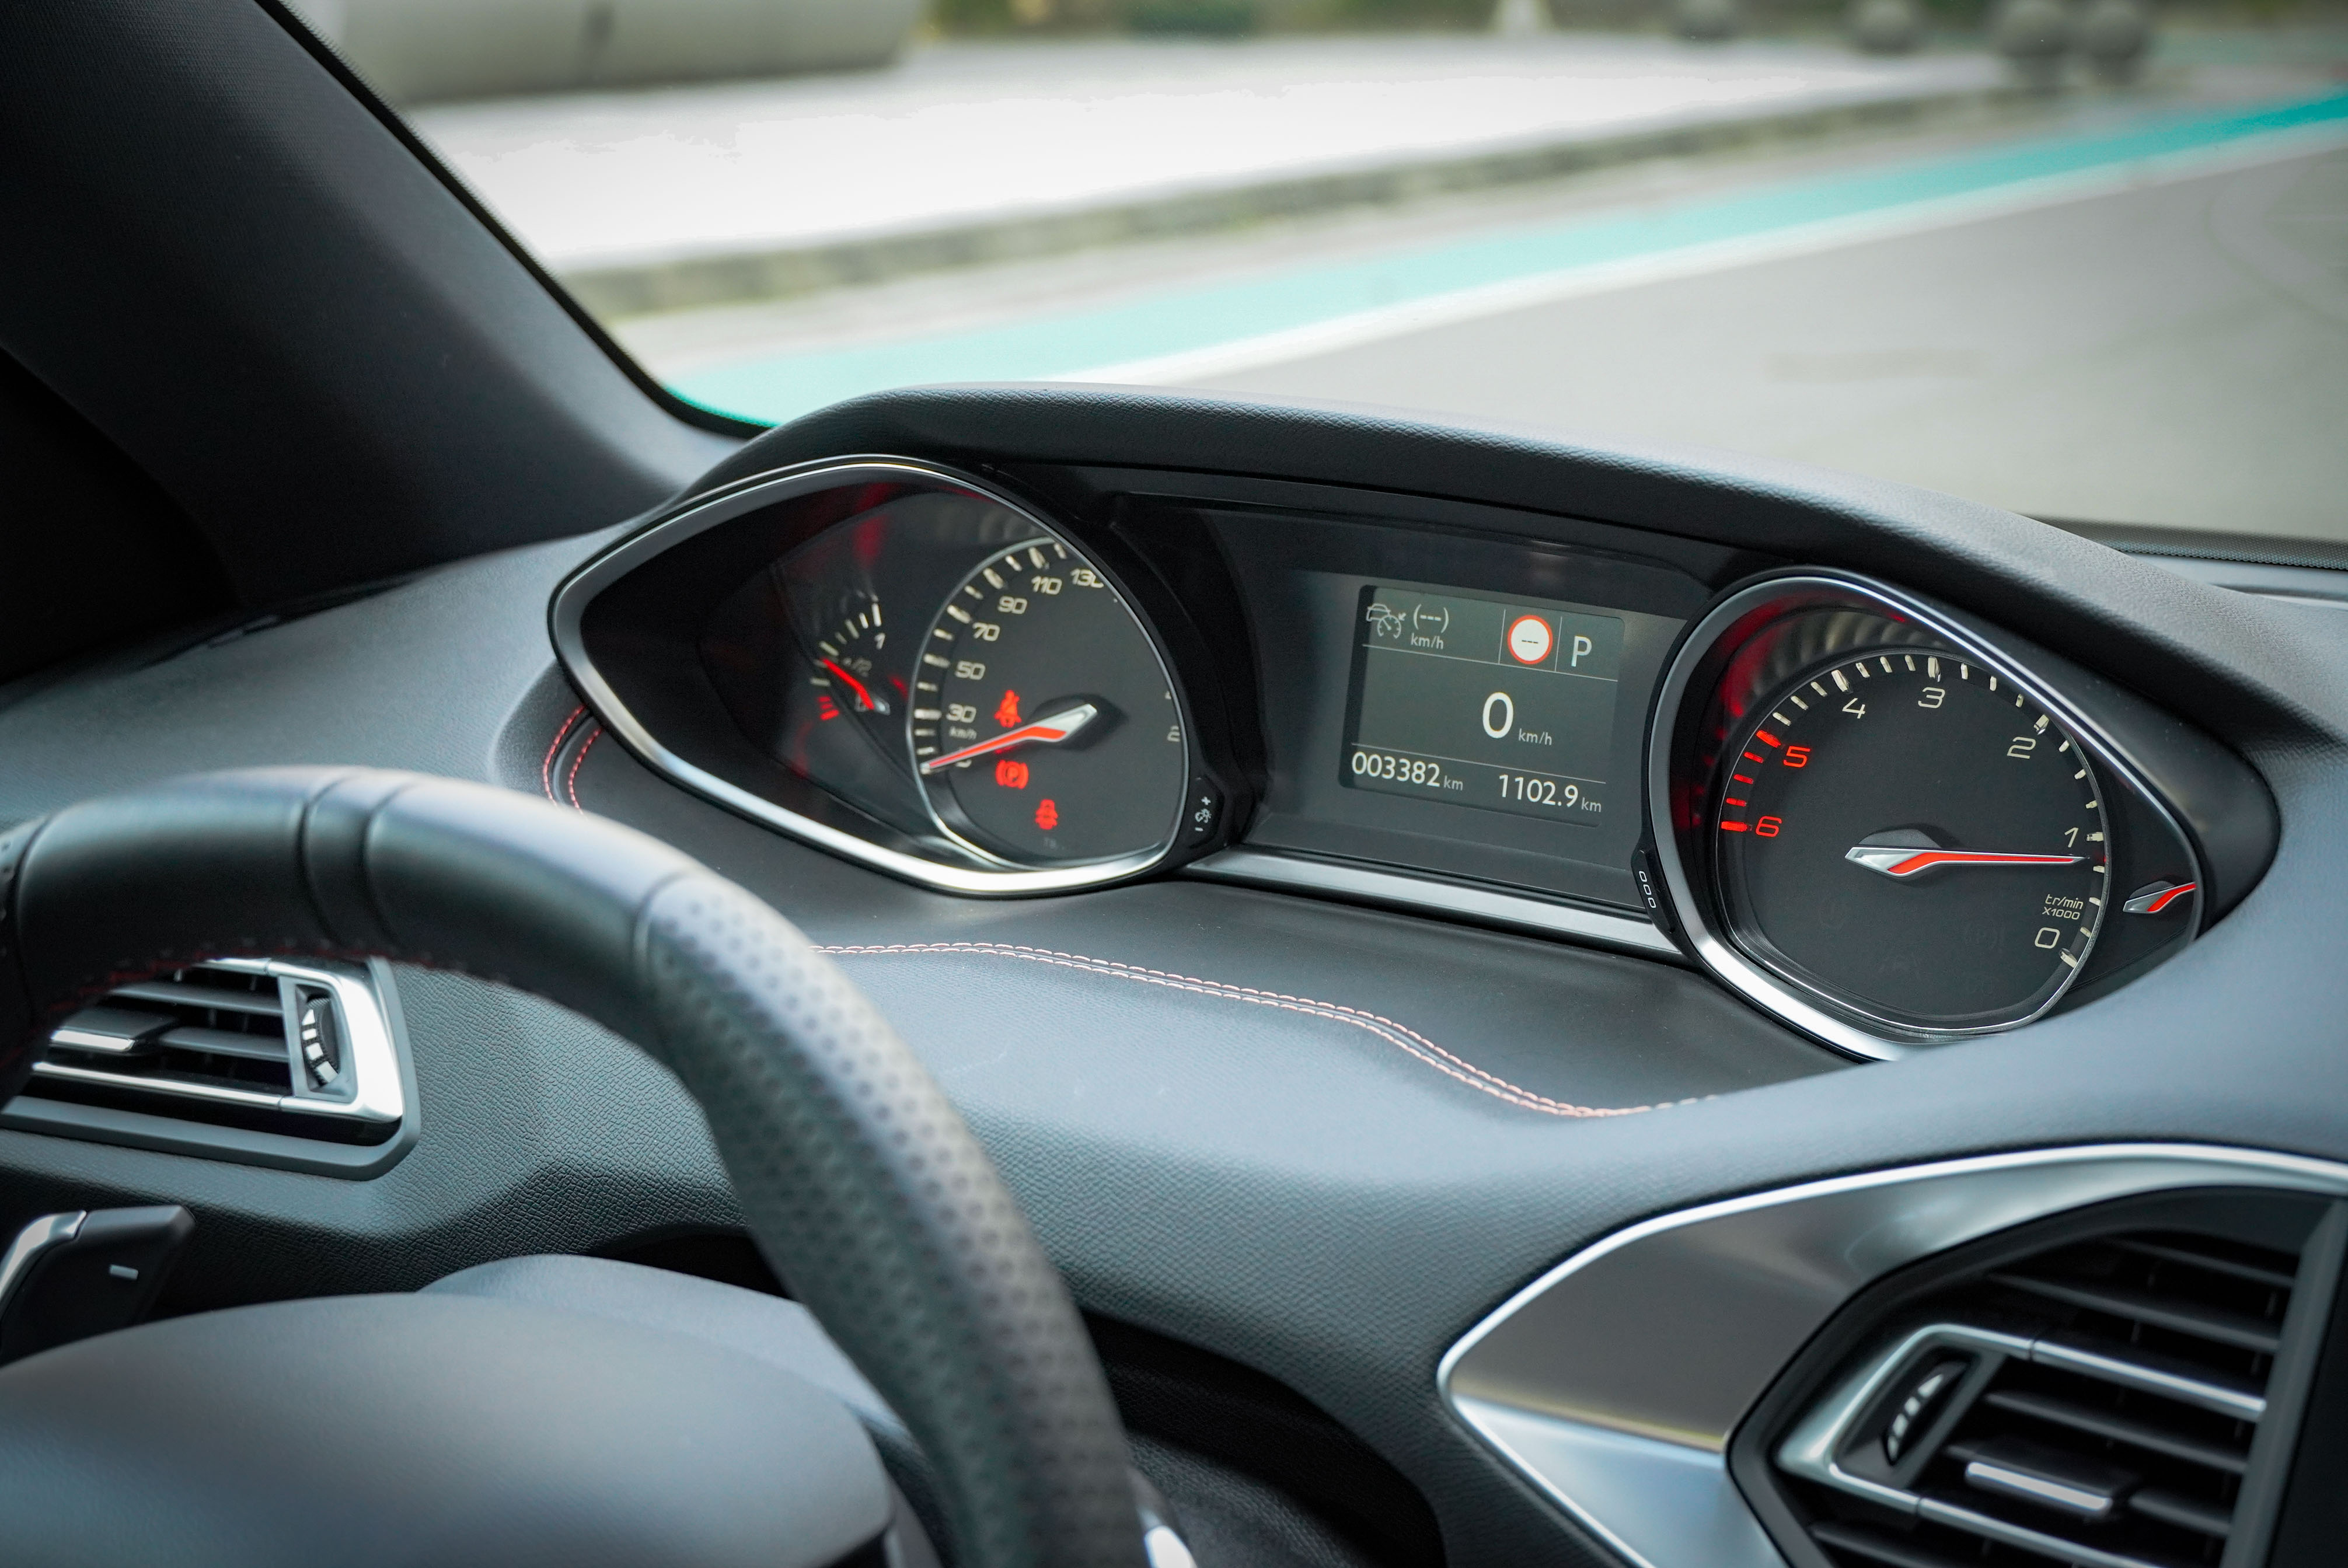 懸浮式抬頭顯示儀錶板是 Peugeot 獨特的設計。